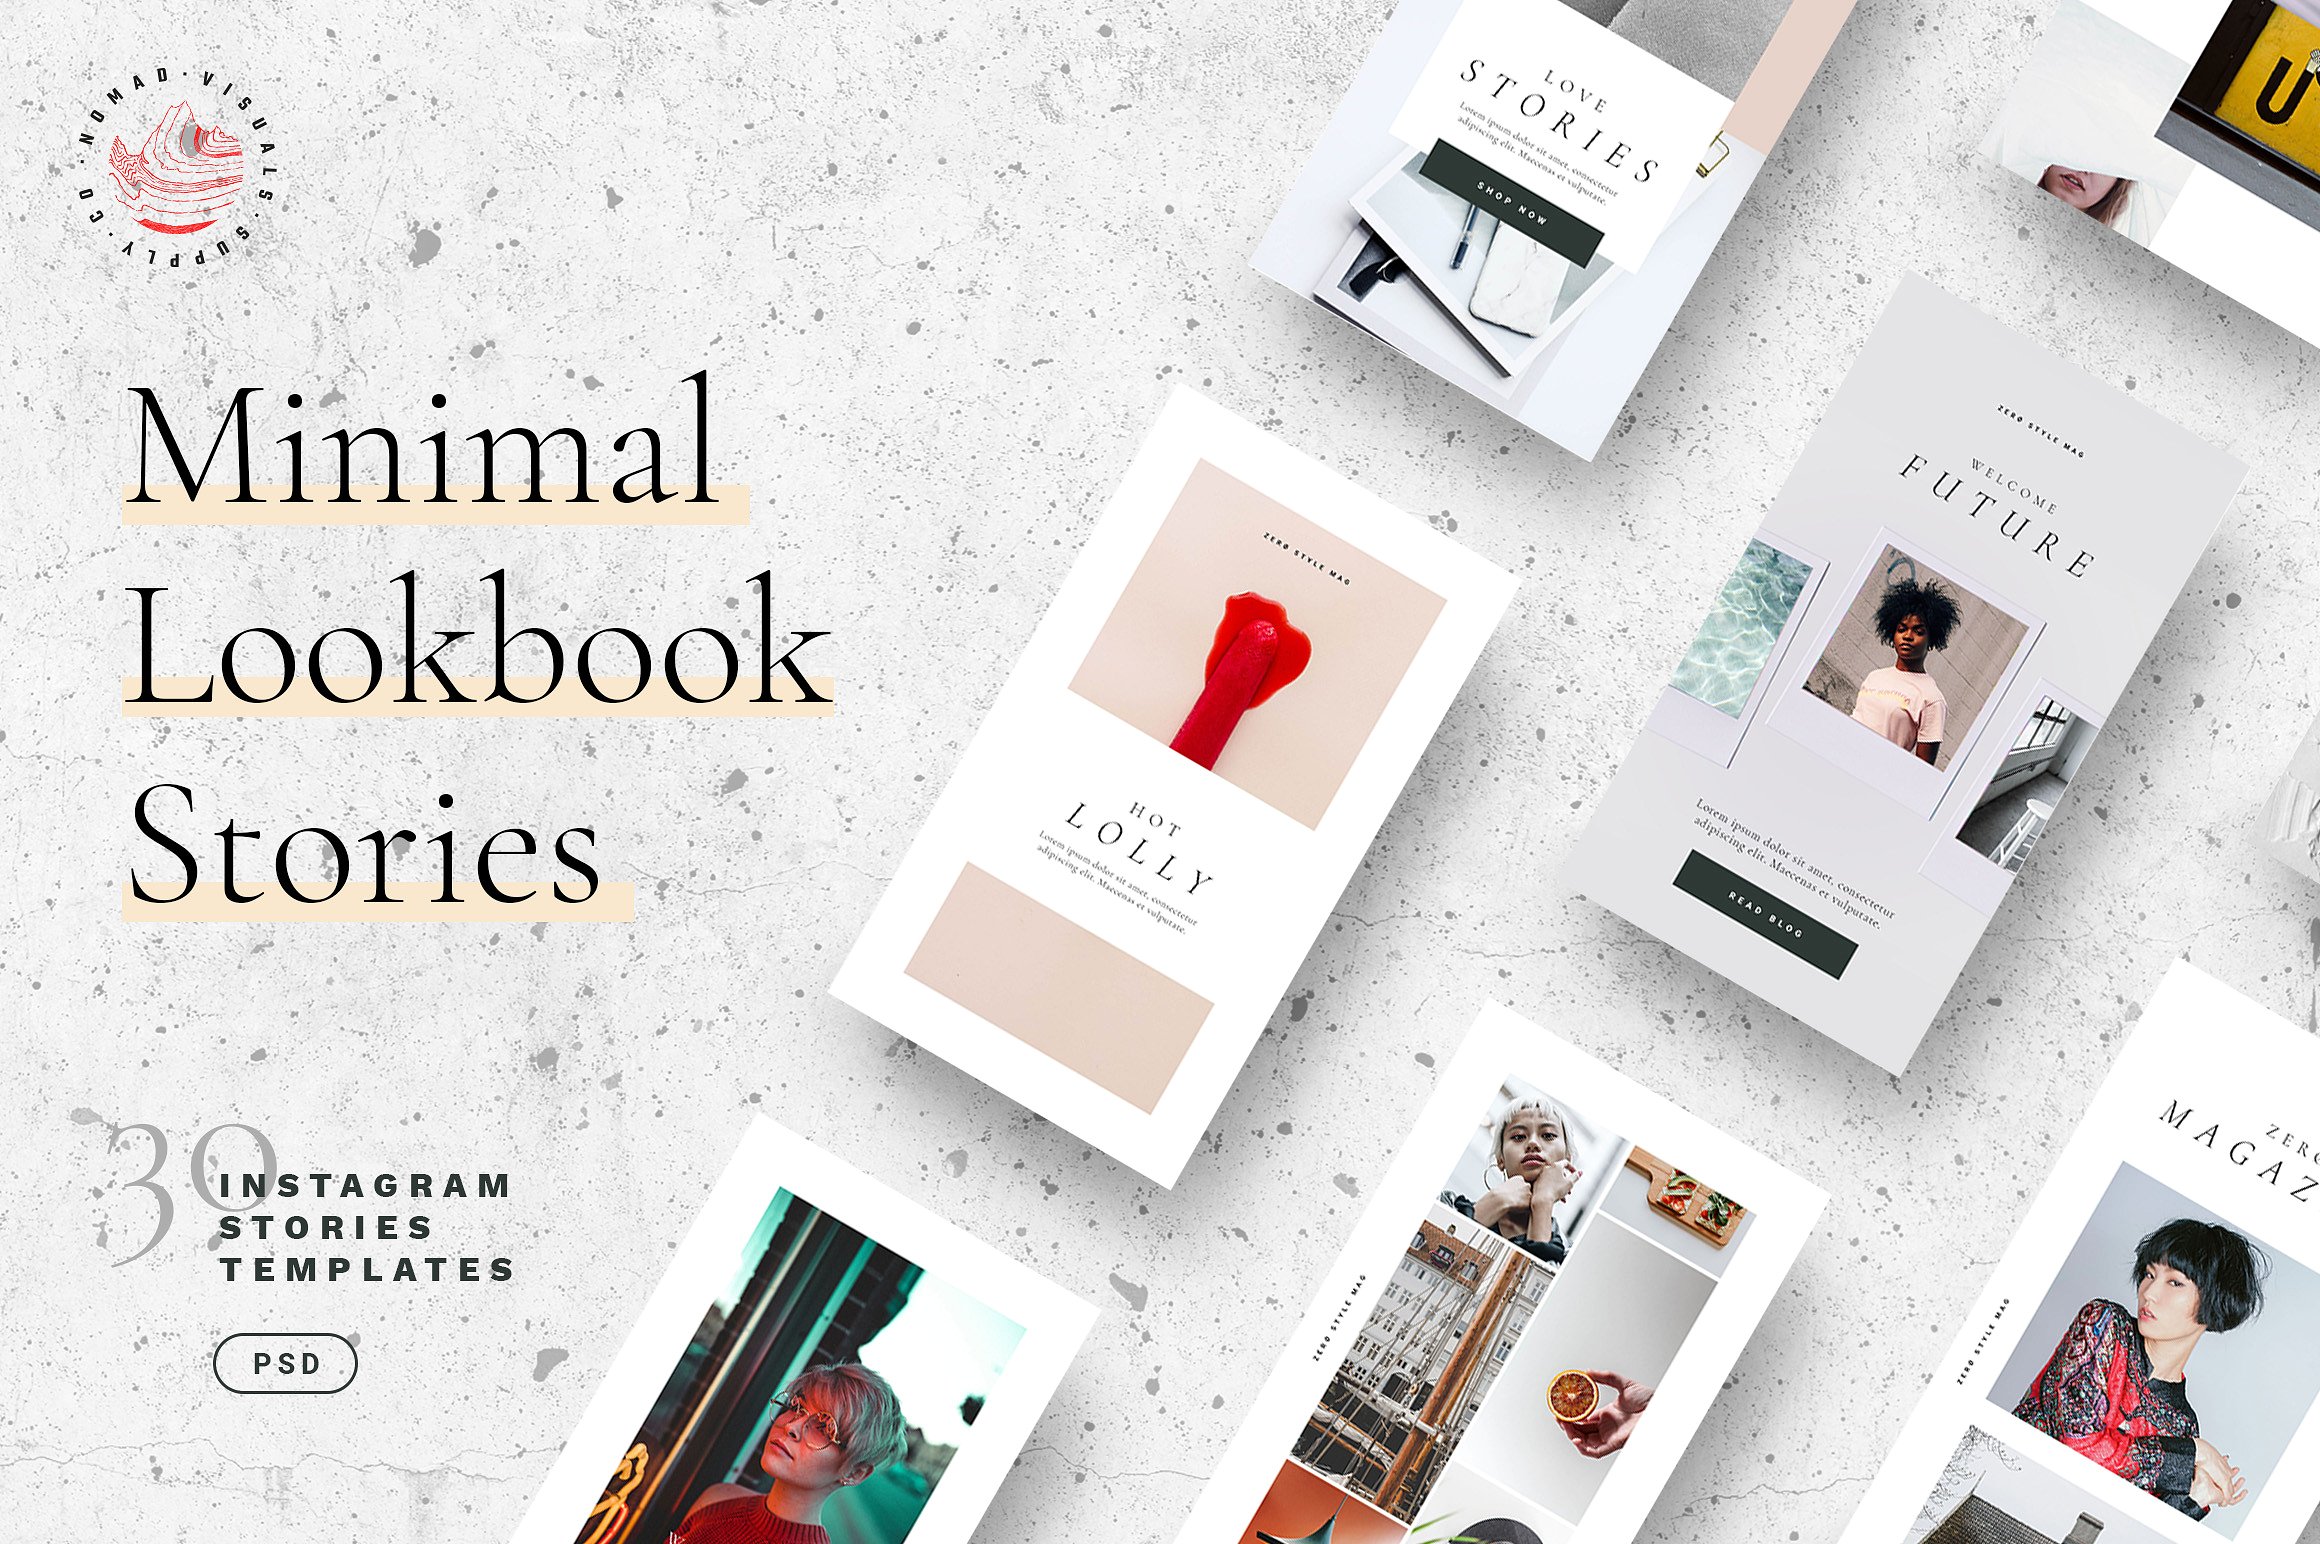 30个独特时尚的Lookbook社交媒体Instagram故事模板第一素材精选 Minimal Lookbook Instagram Stories [psd]插图